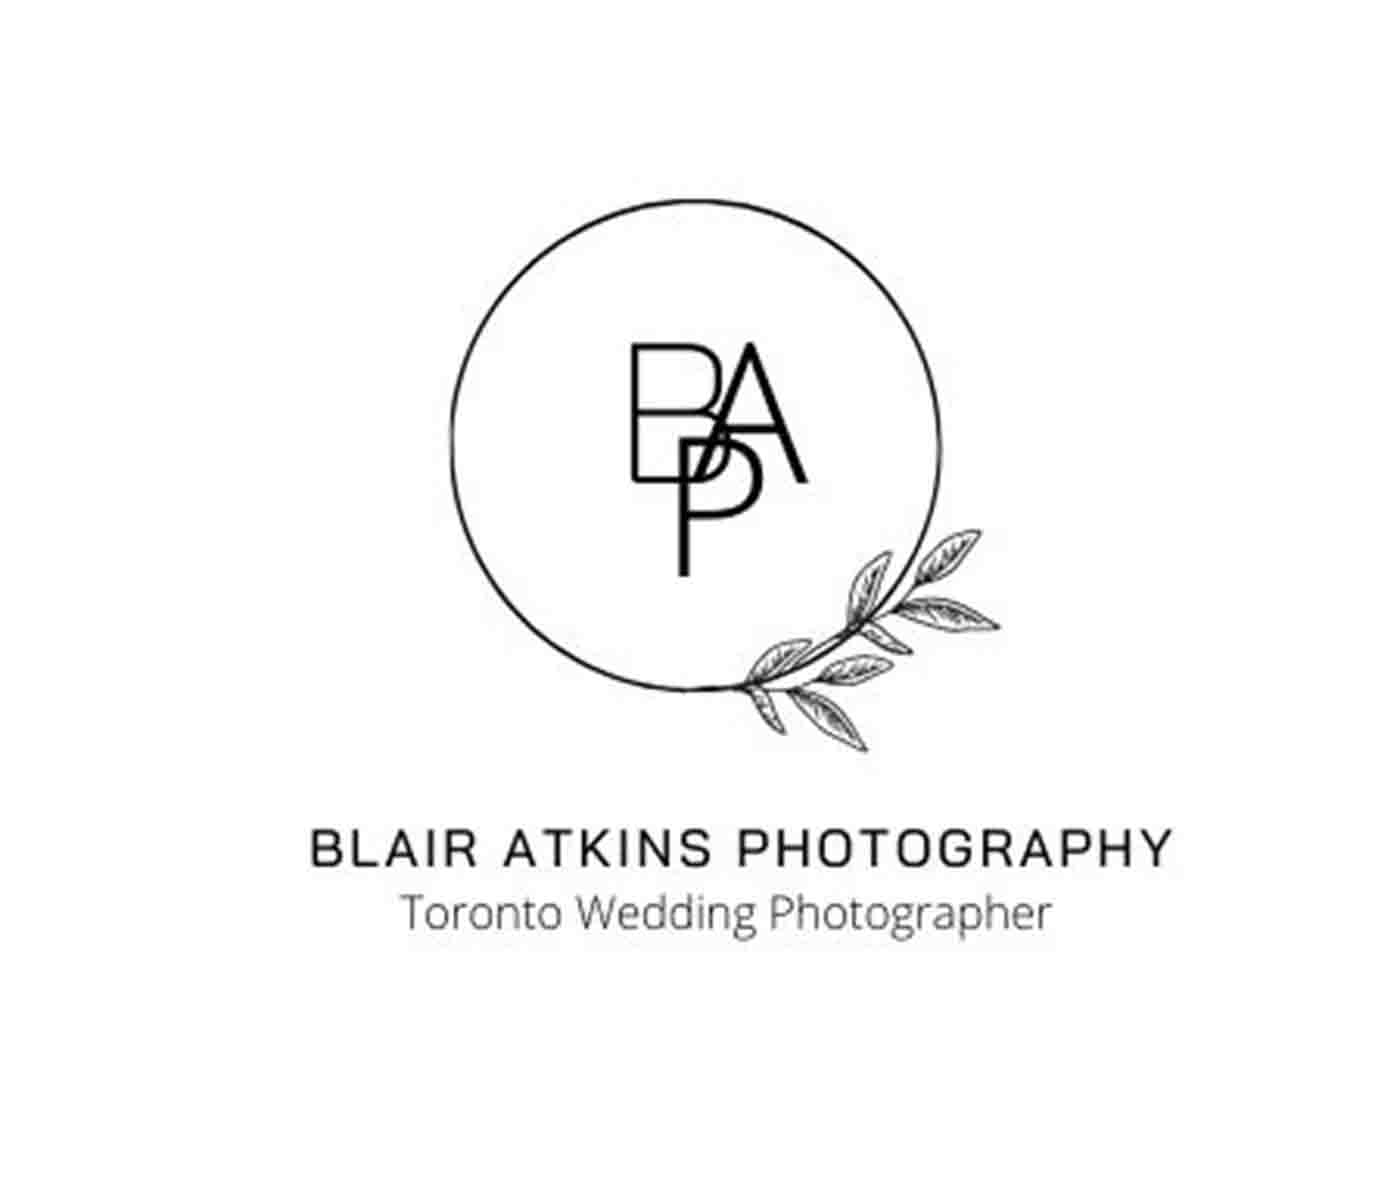 Blair Atkins Photography